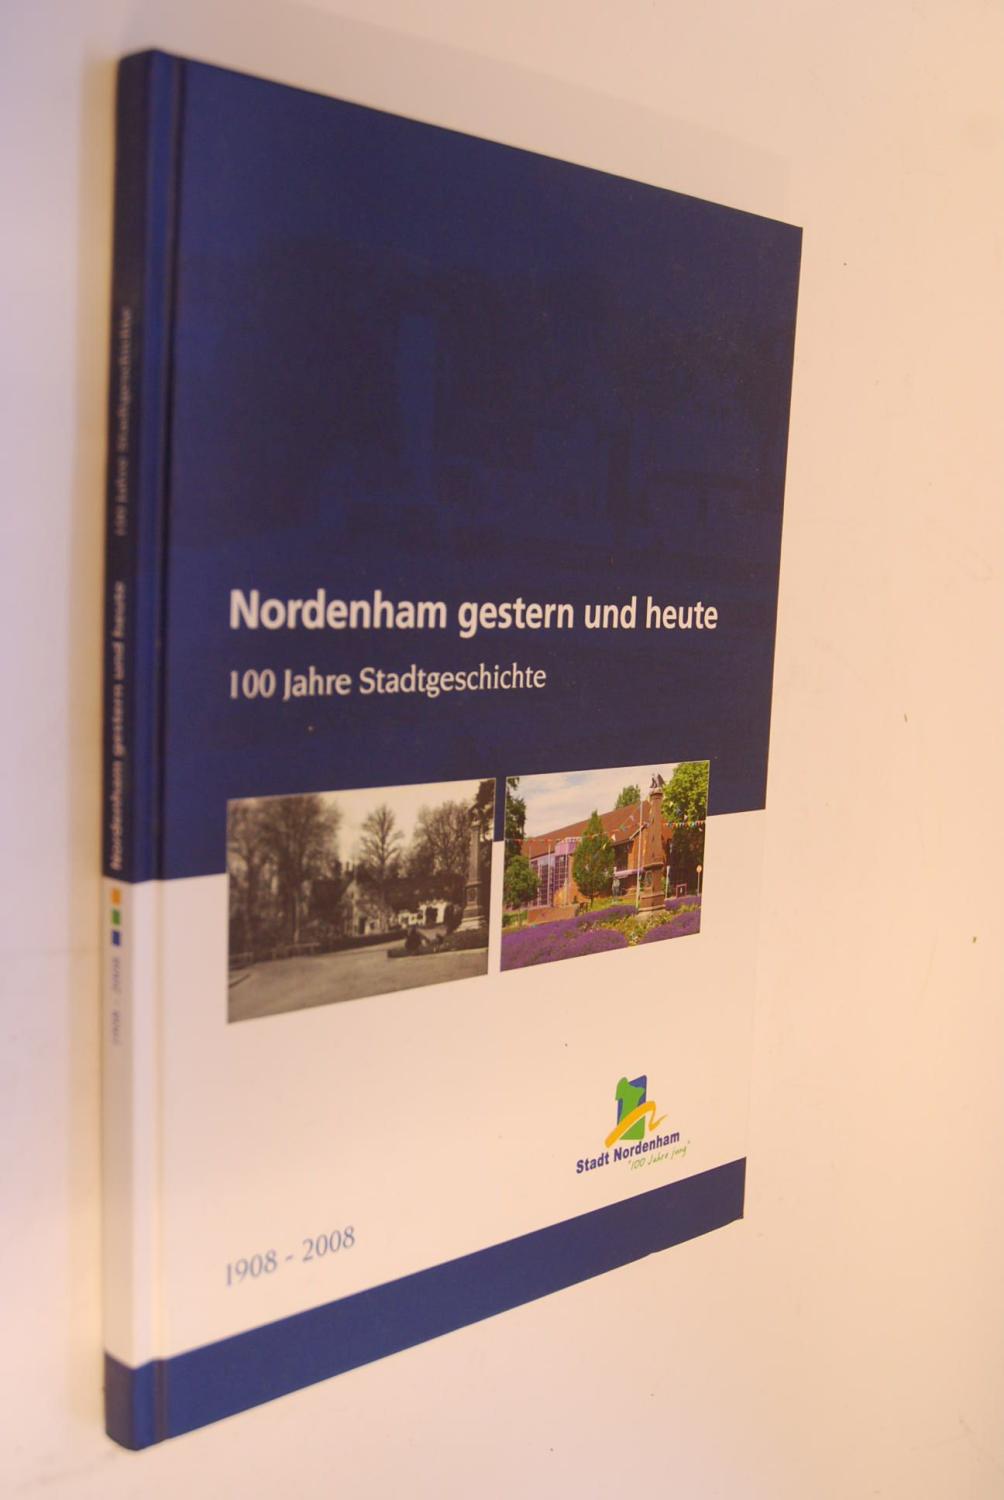 Nordenham gestern und heute. 100 Jahre Stadtgeschichte. 1908 - 2008.